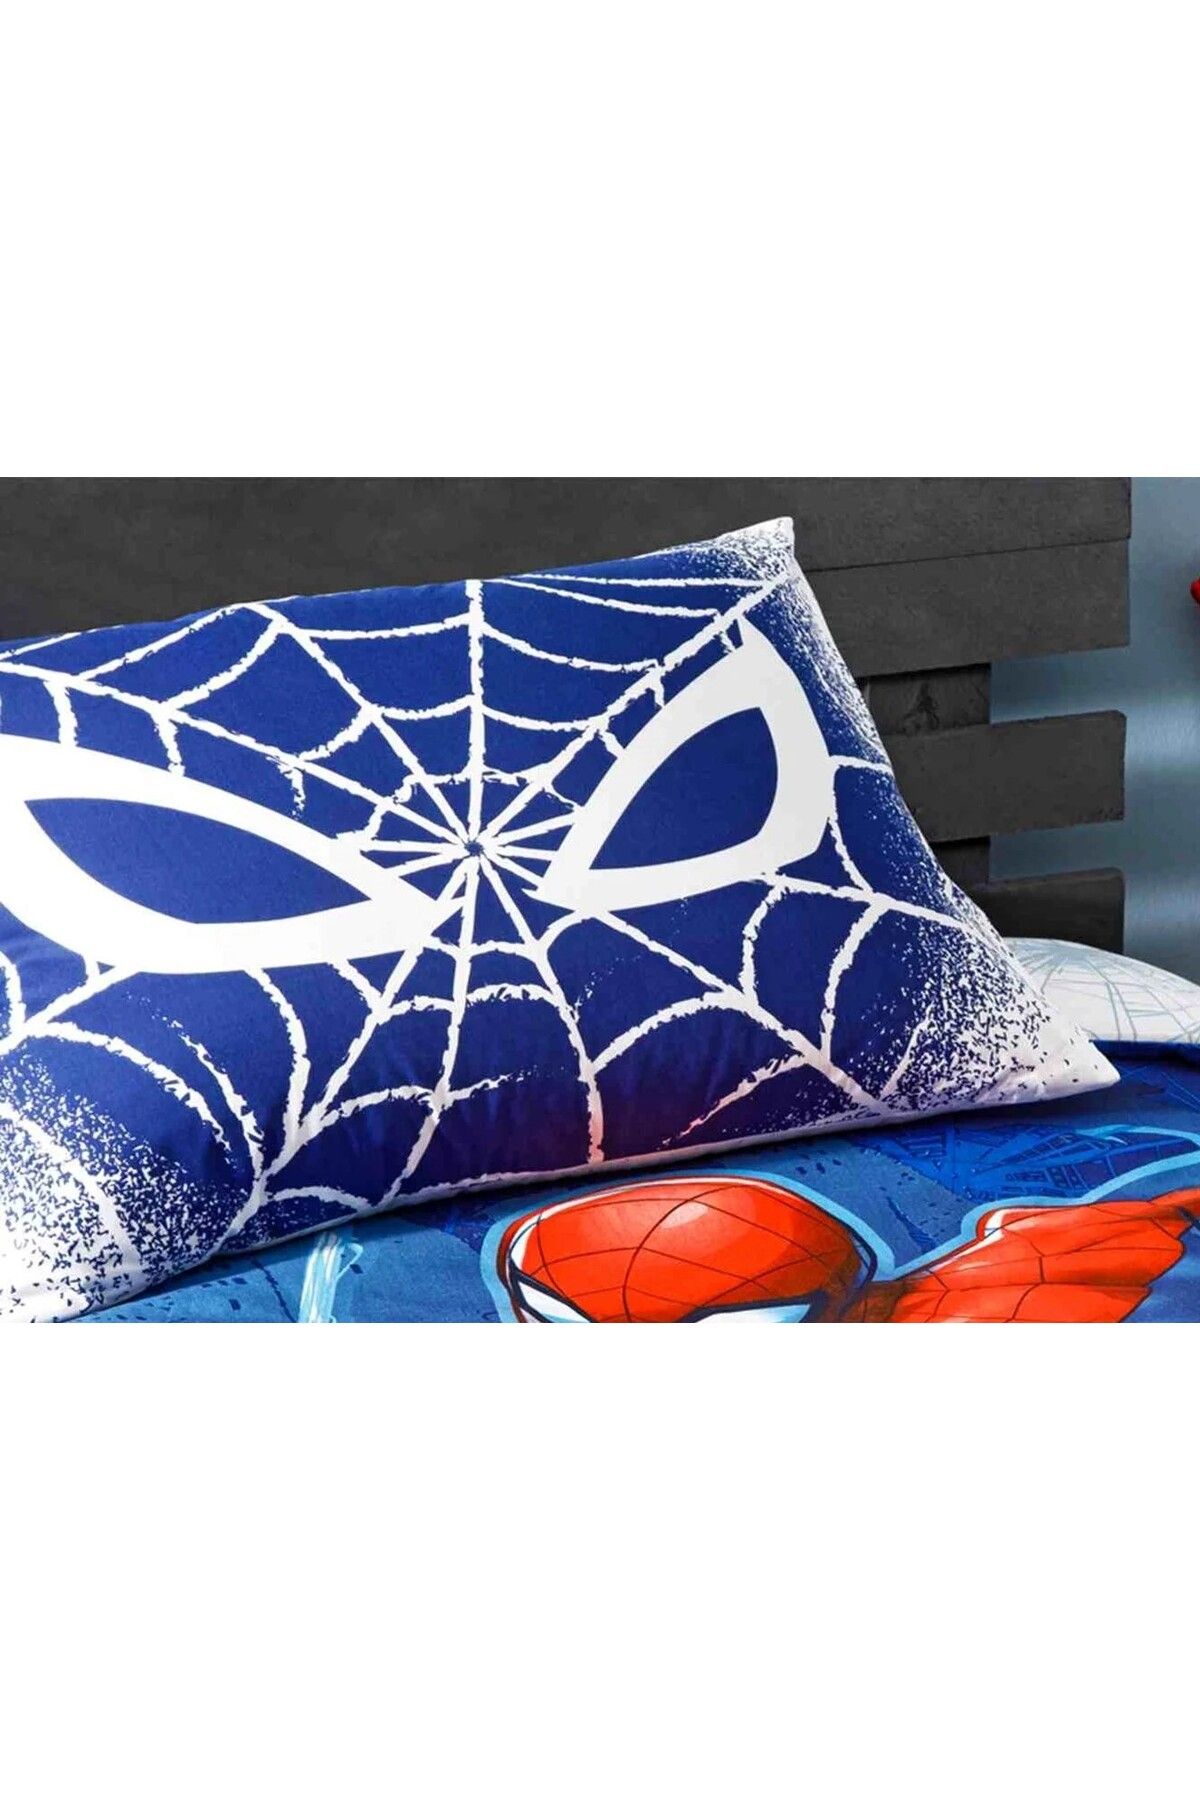 Taç Outlet Disney  Spider Man Blue % 100 Pamuk Lisanslı Yastık Kılıfı 2 Adet